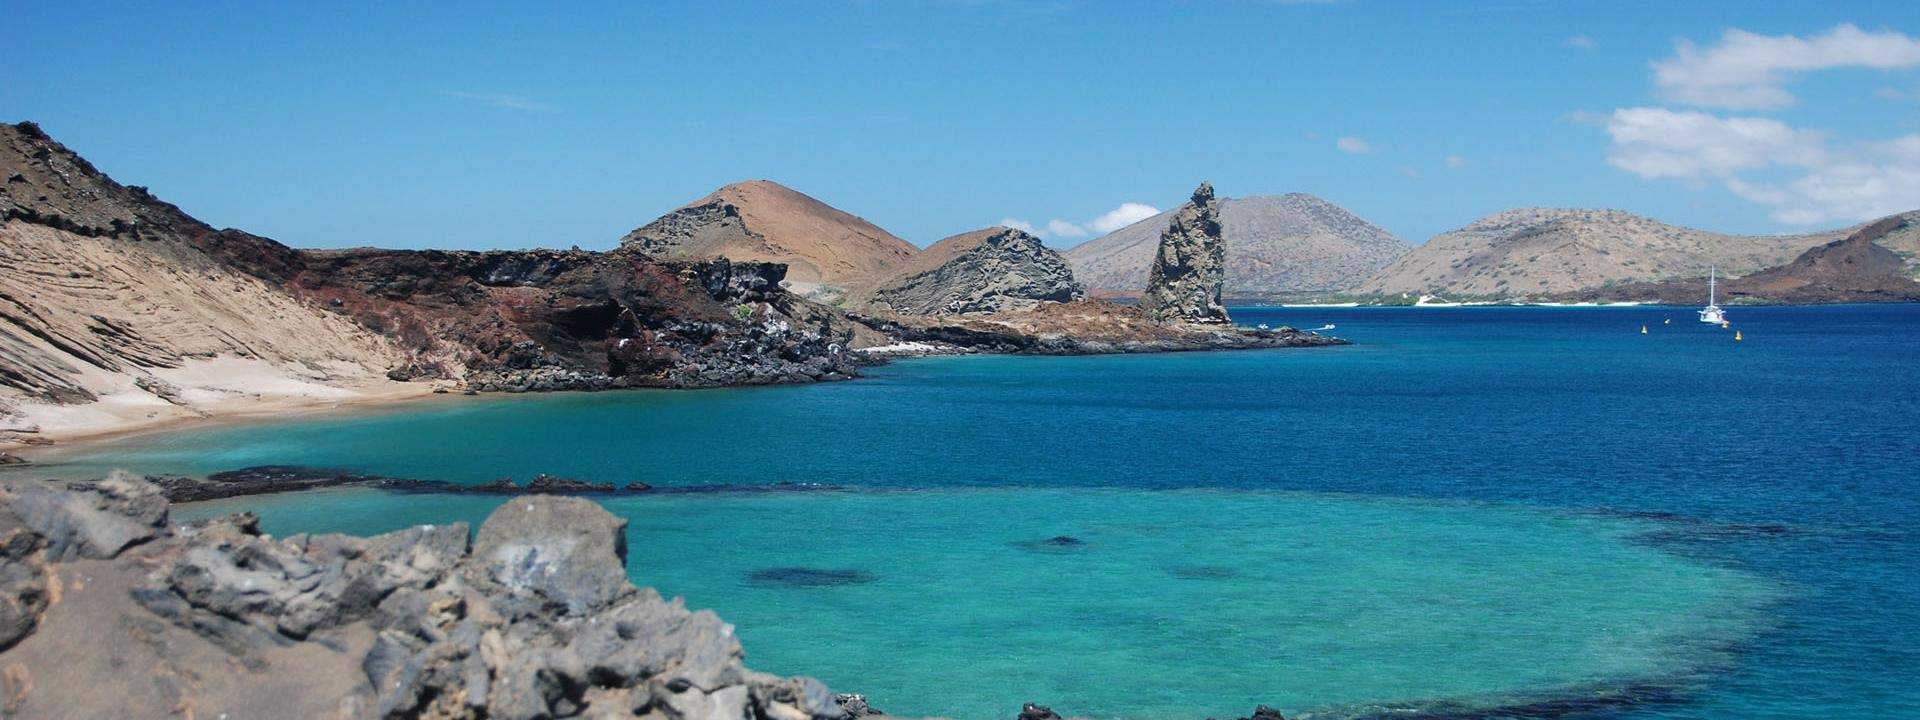 Voguez sur l'océan Pacifique, parmi les plus belles îles des Galapagos